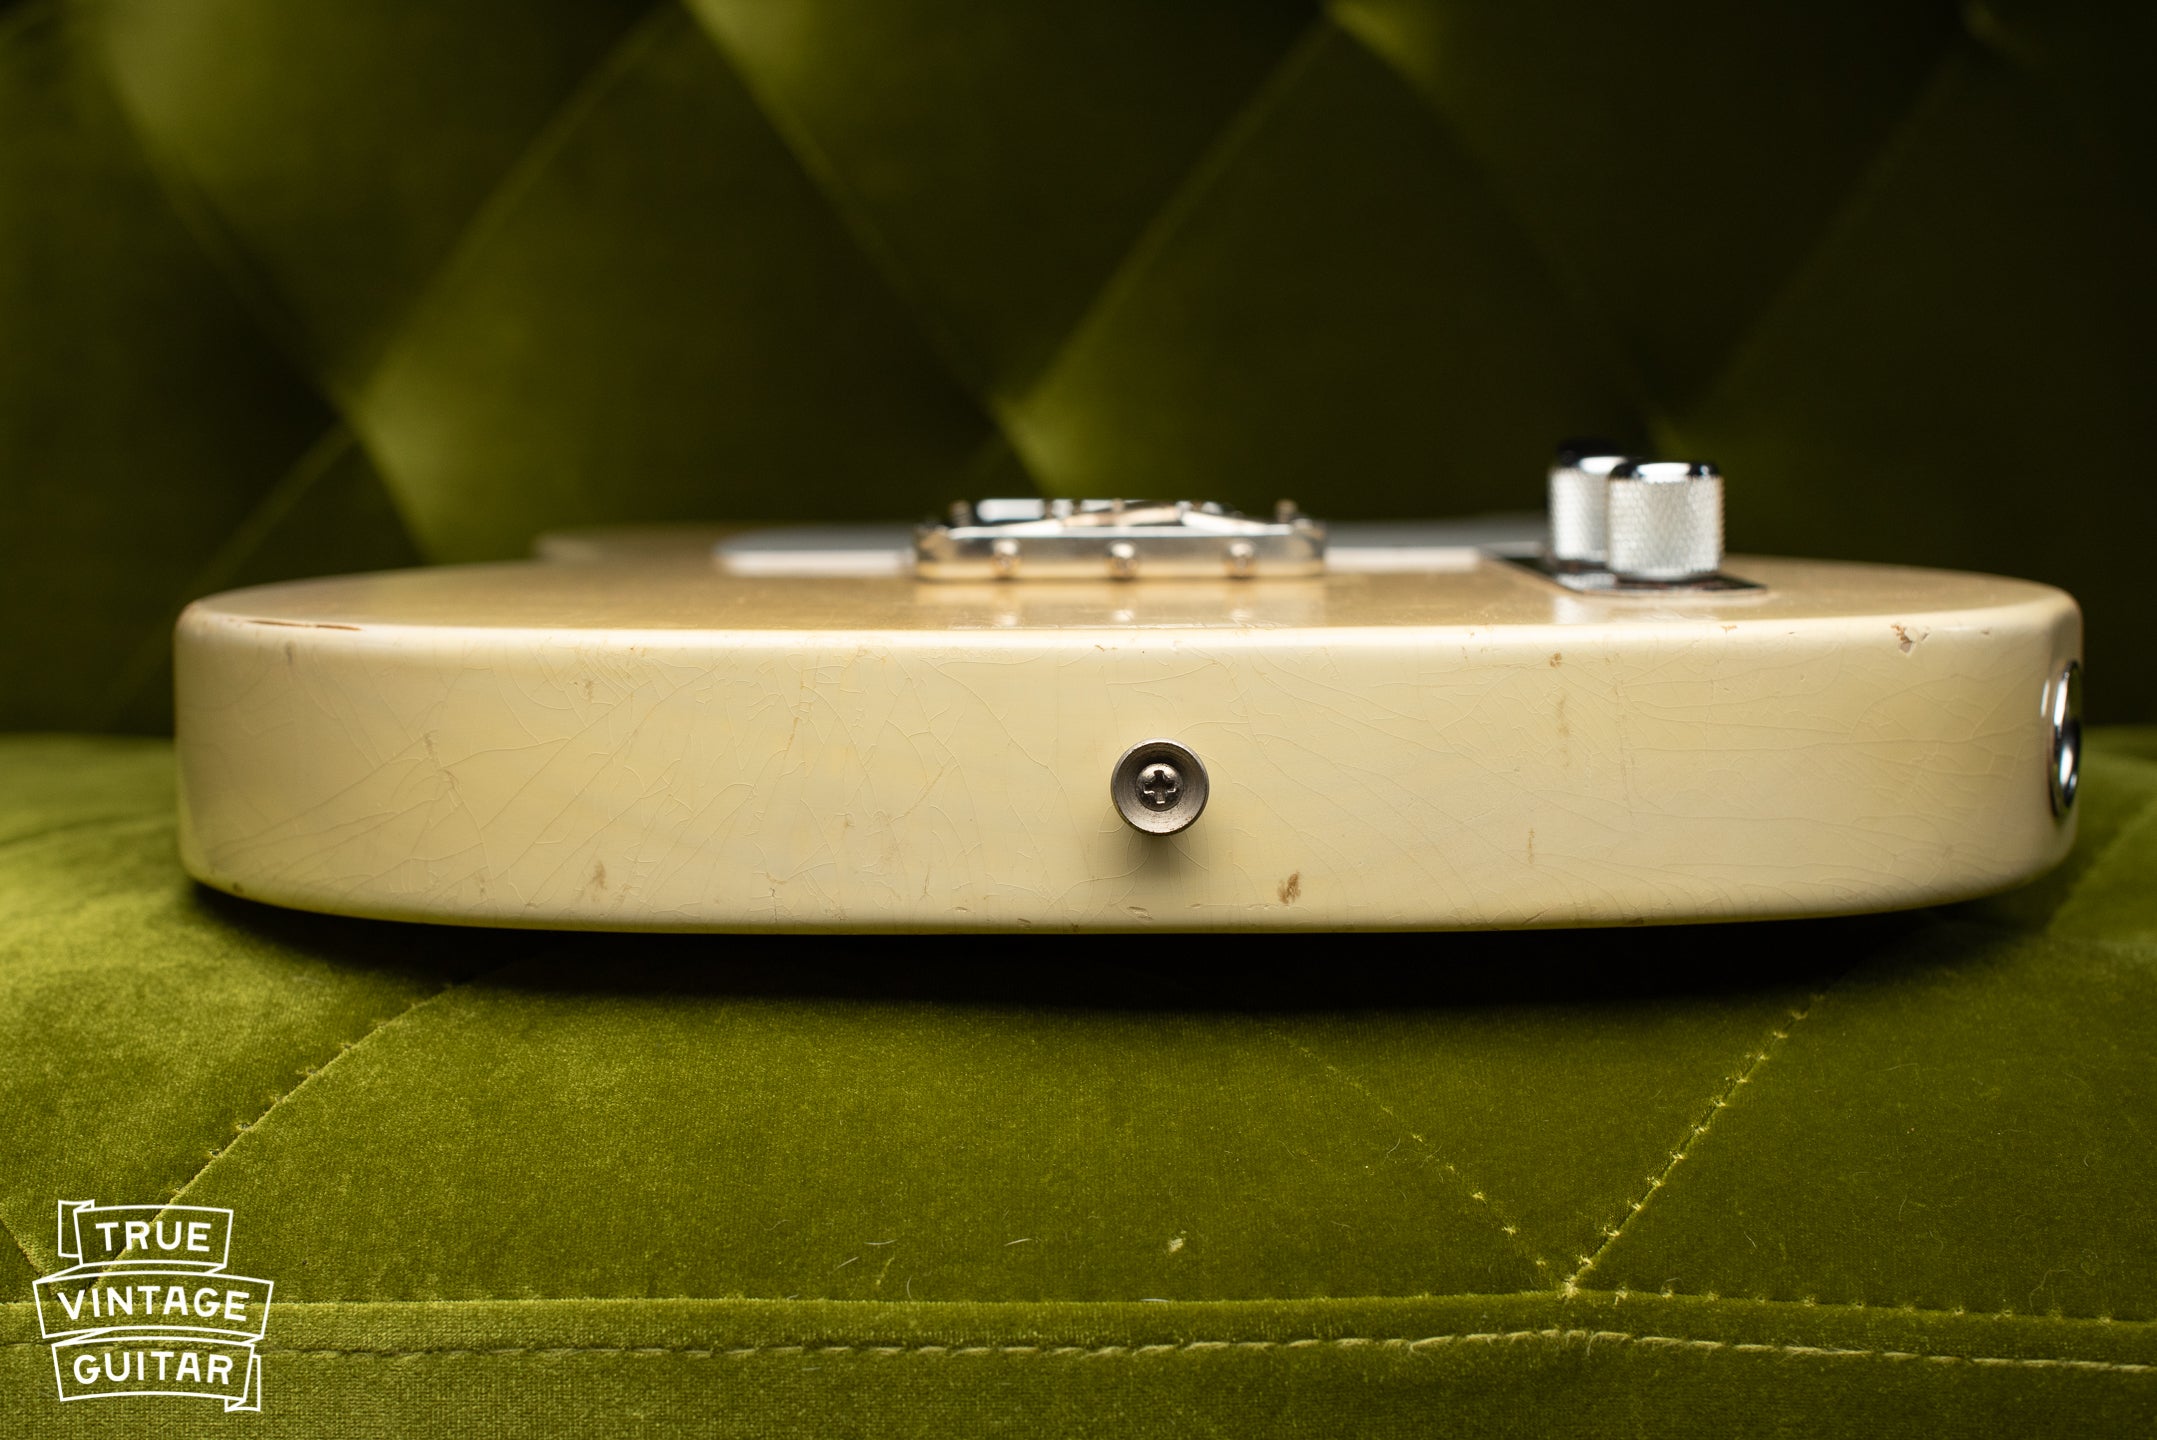 1957 Fender Telecaster Blond body